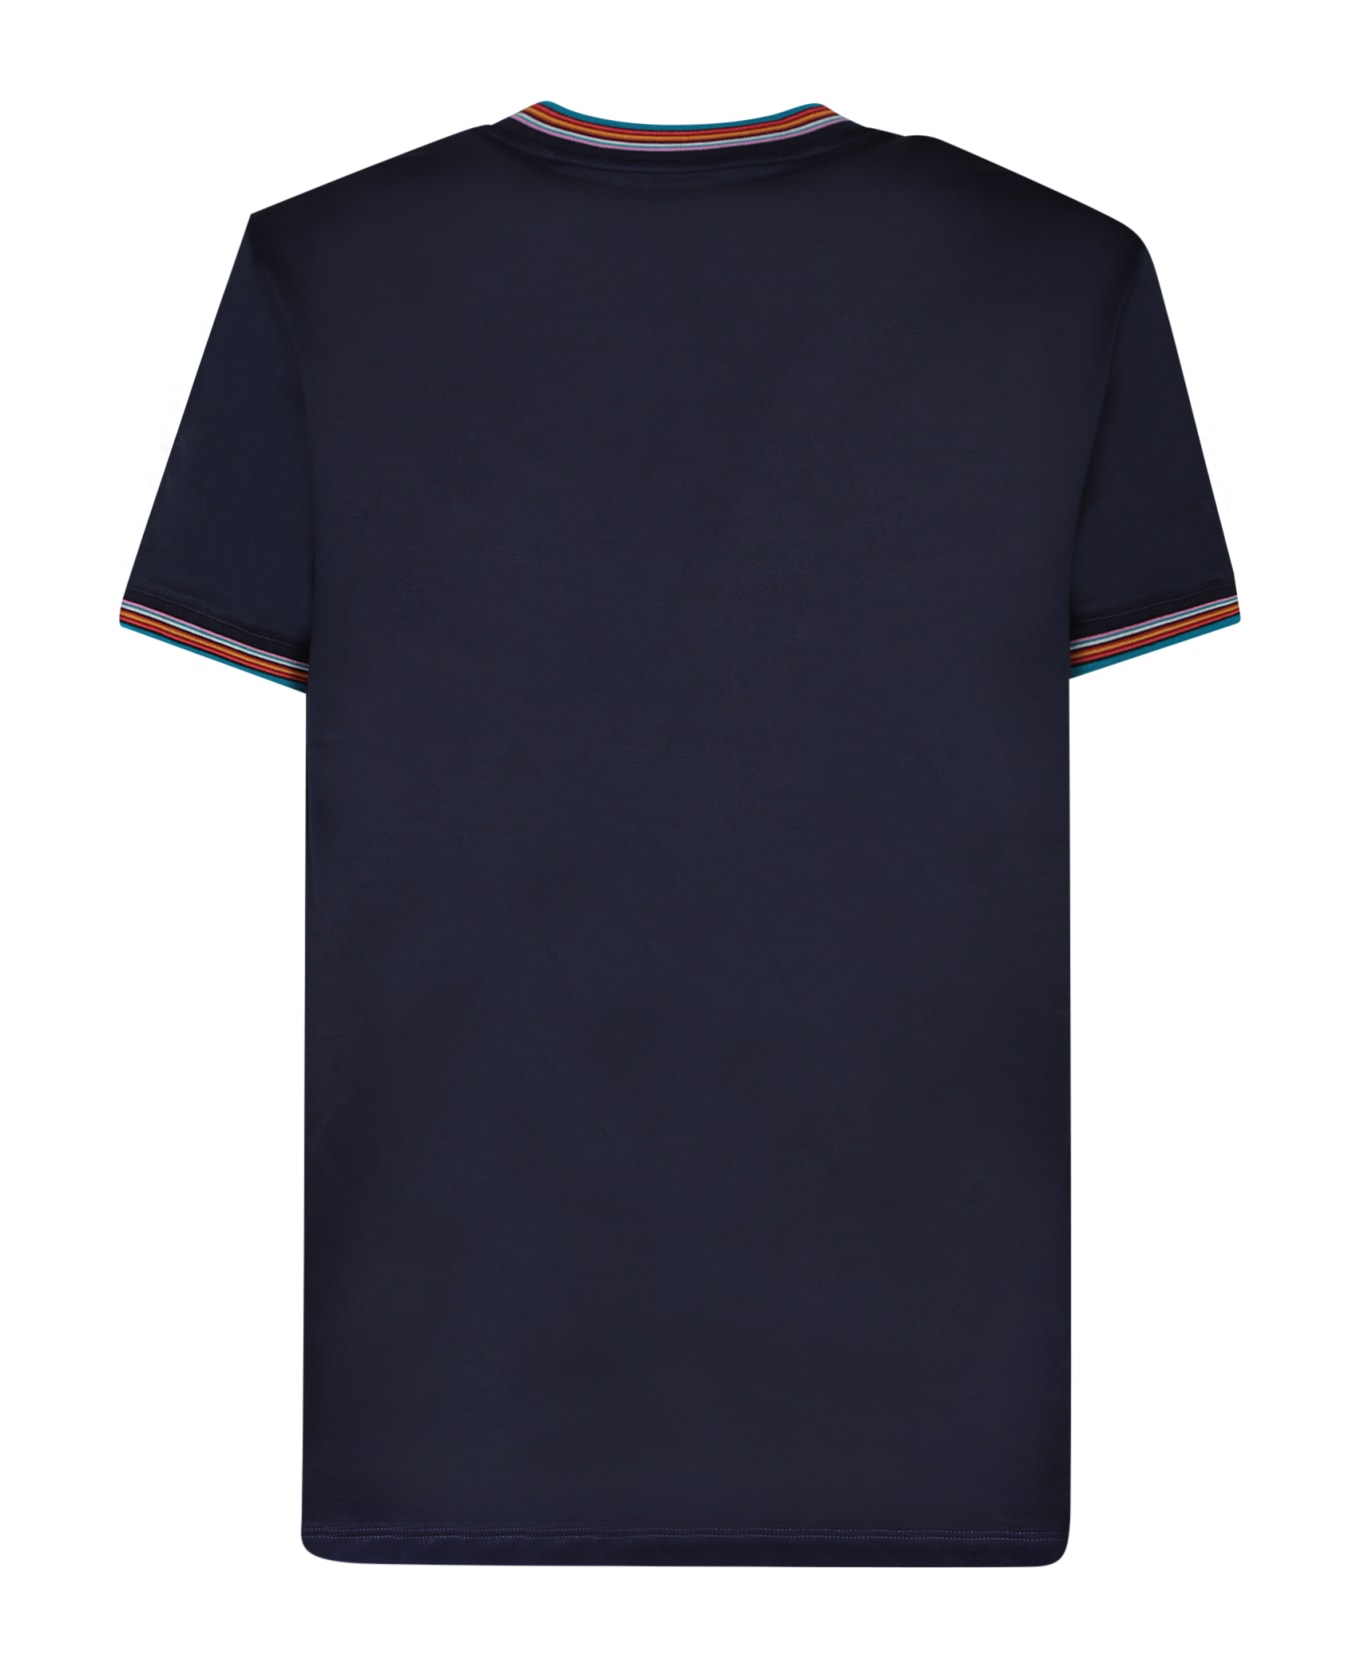 Paul Smith Stripe Detail Cotton T-shirt - Dk na シャツ